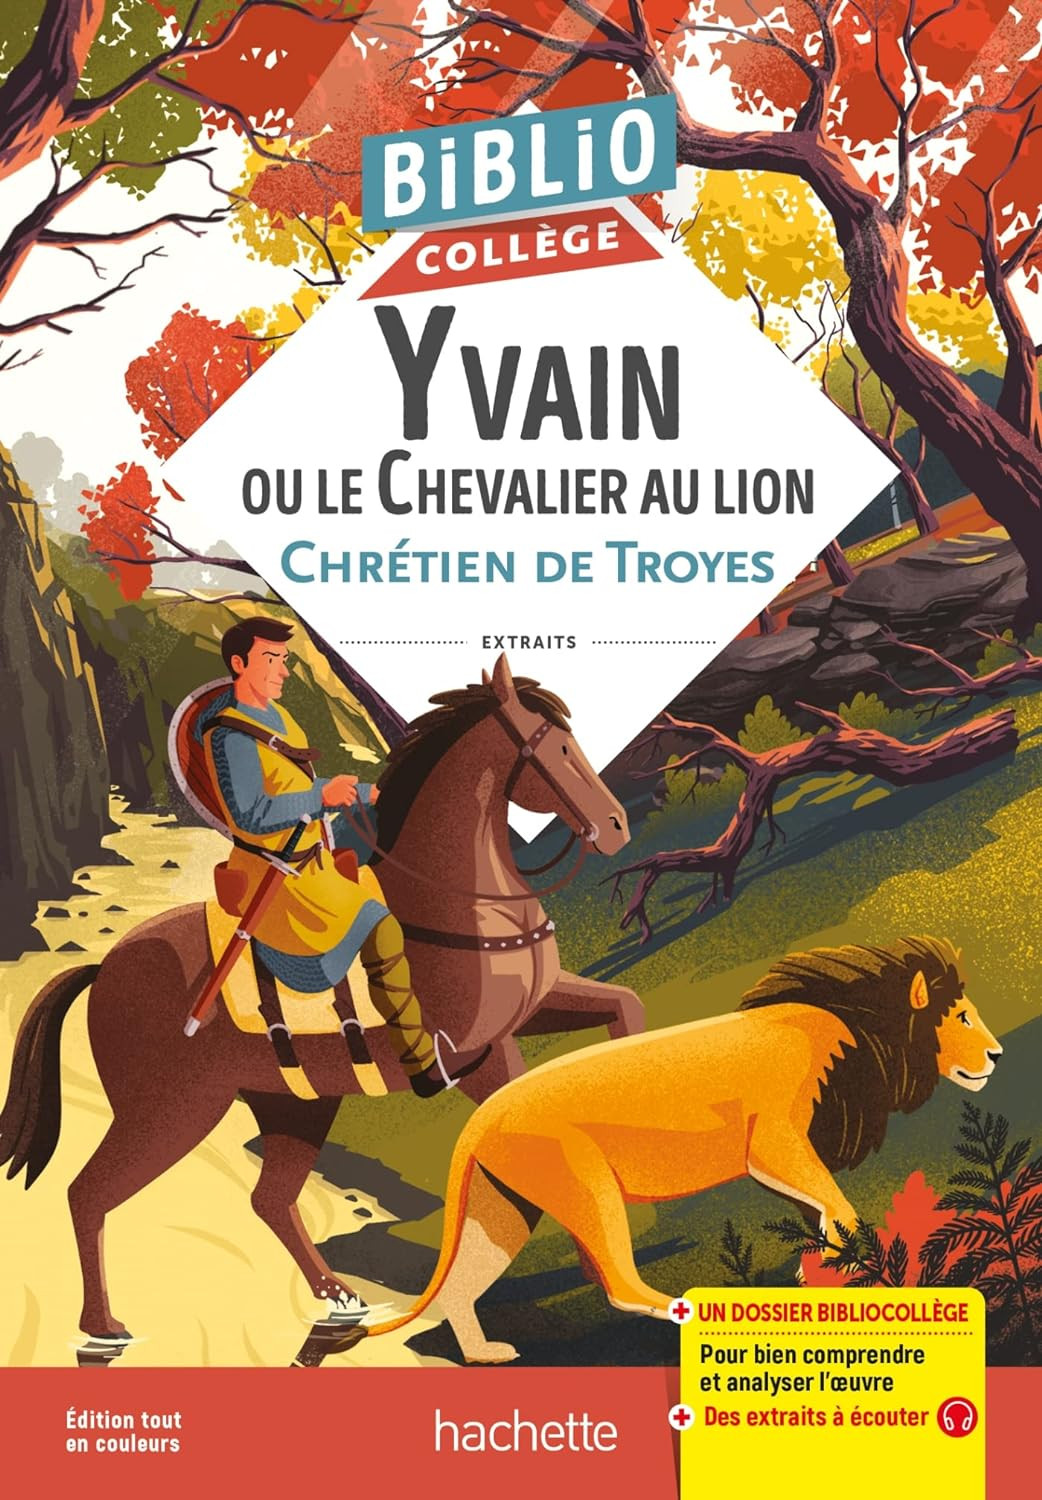 Publisher Hachette - Bibliocollège:Yvain ou le Chevalier au lion, Chrétien de Troyes -  Chrétien de Troyes